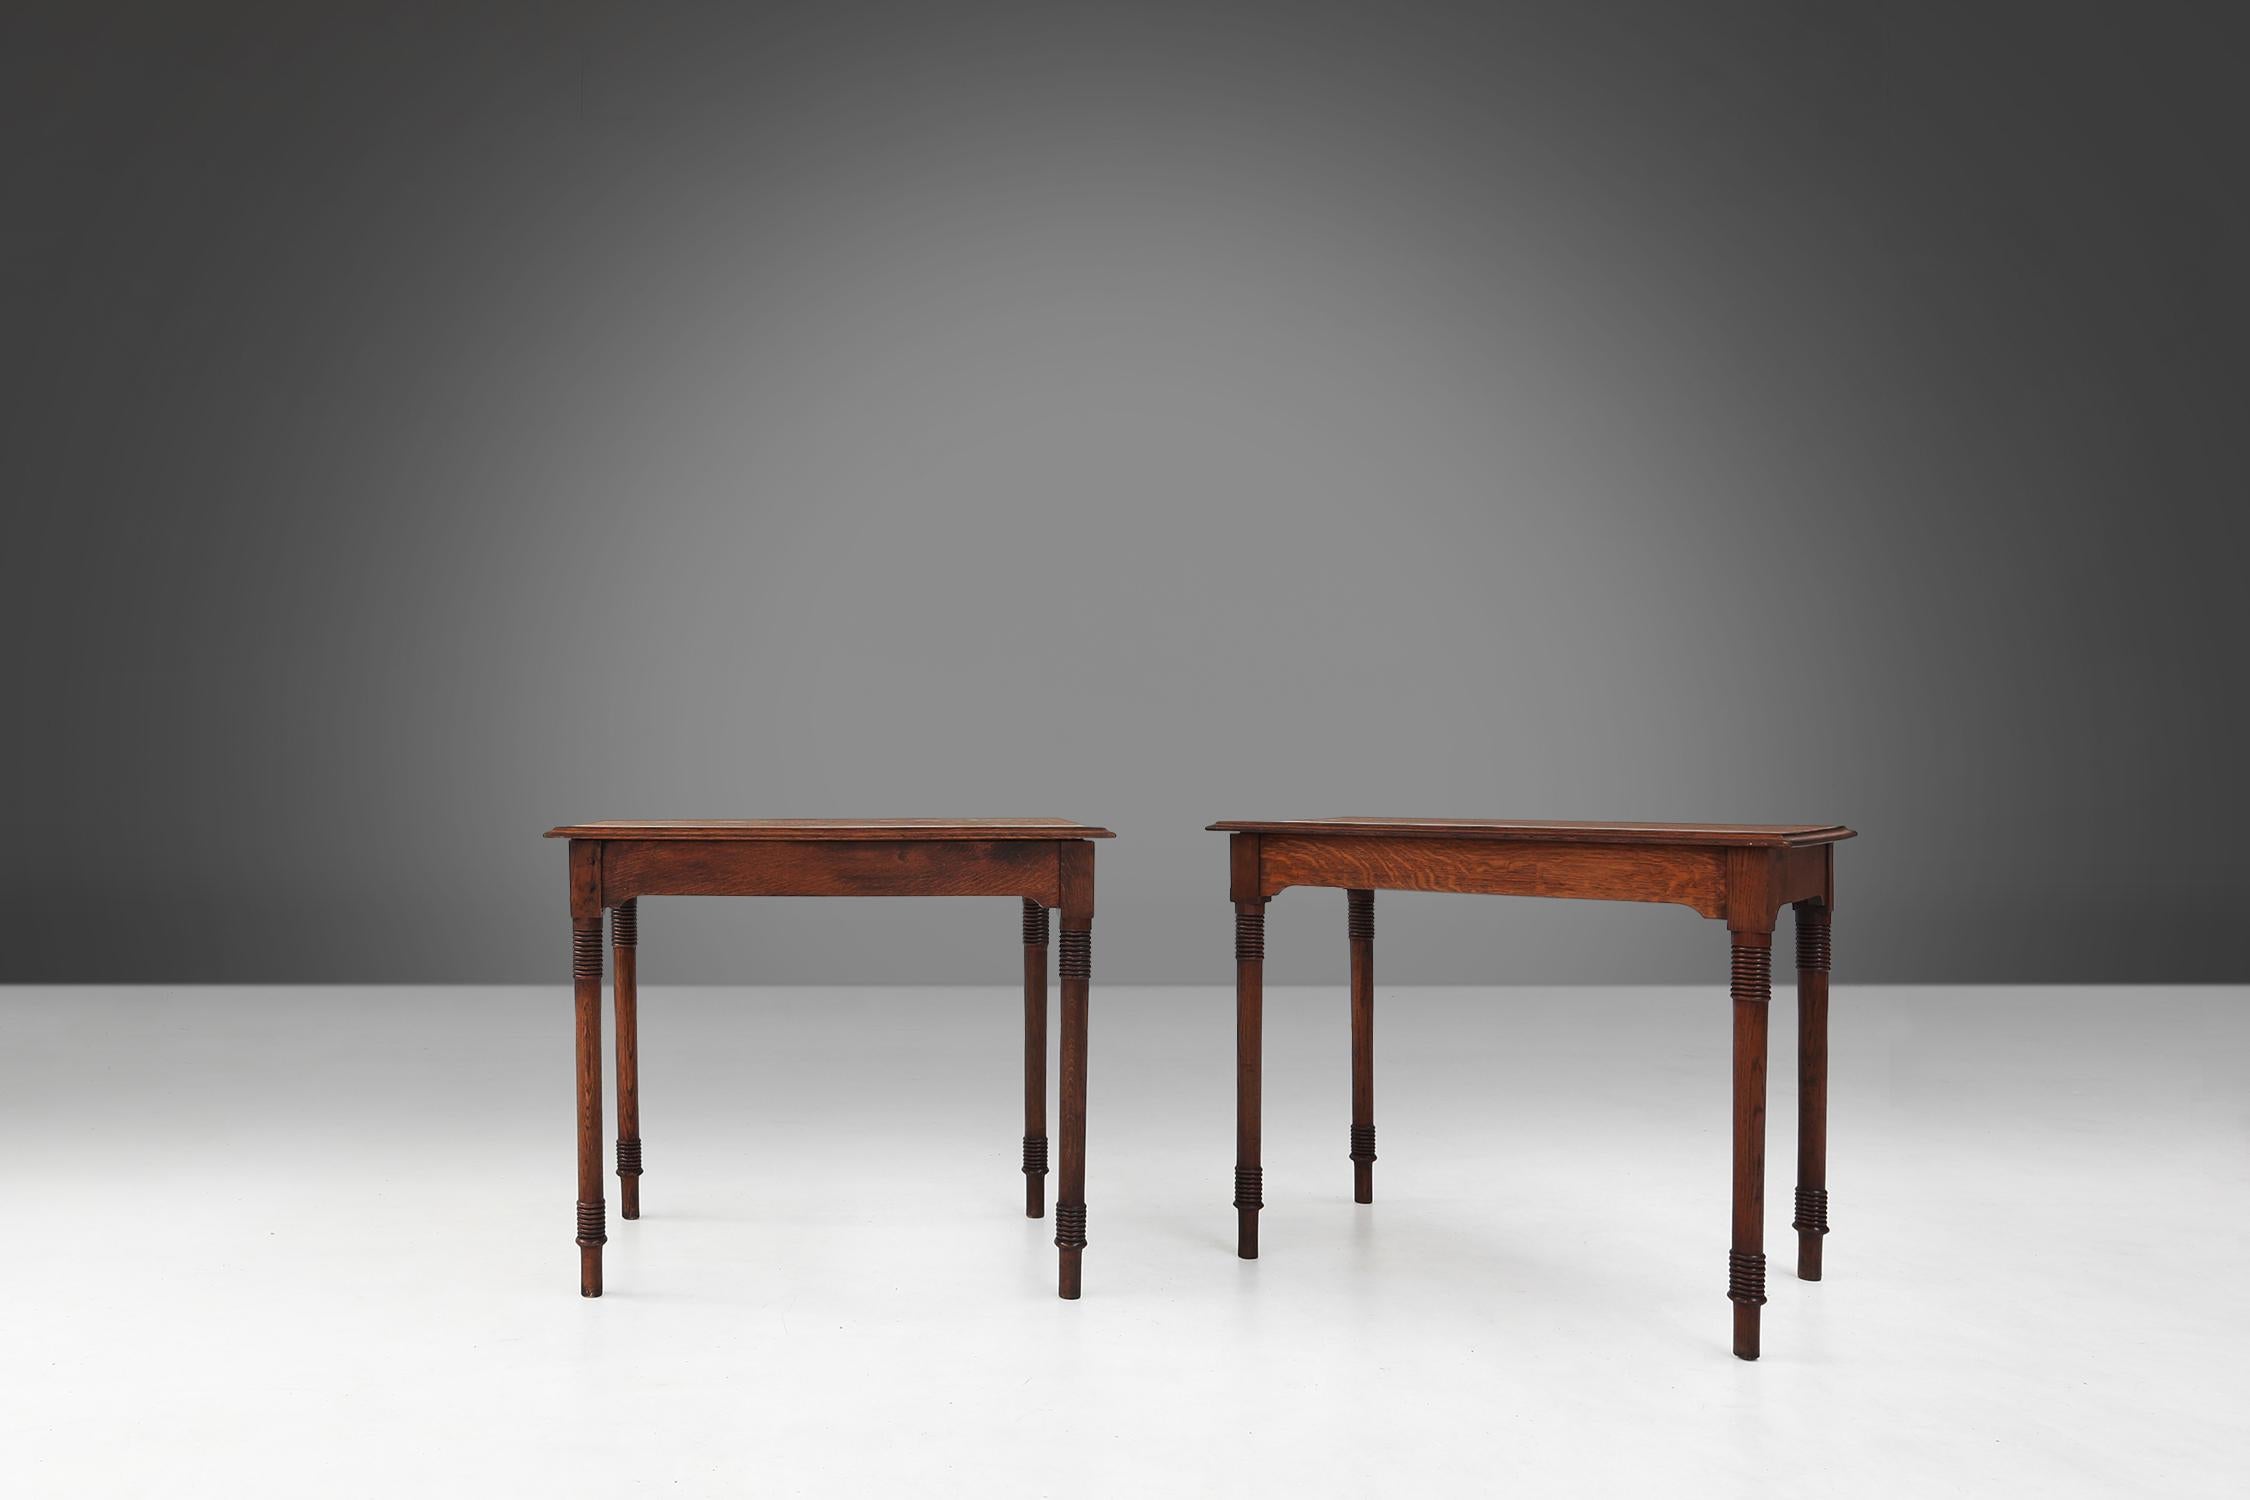 Ce magnifique ensemble de deux tables rectangulaires. Elles sont fabriquées en bois et la chose la plus frappante à propos de ces tables est la beauté des détails des pieds, qui sont typiques du style art déco. Les pieds ont une forme décorative et